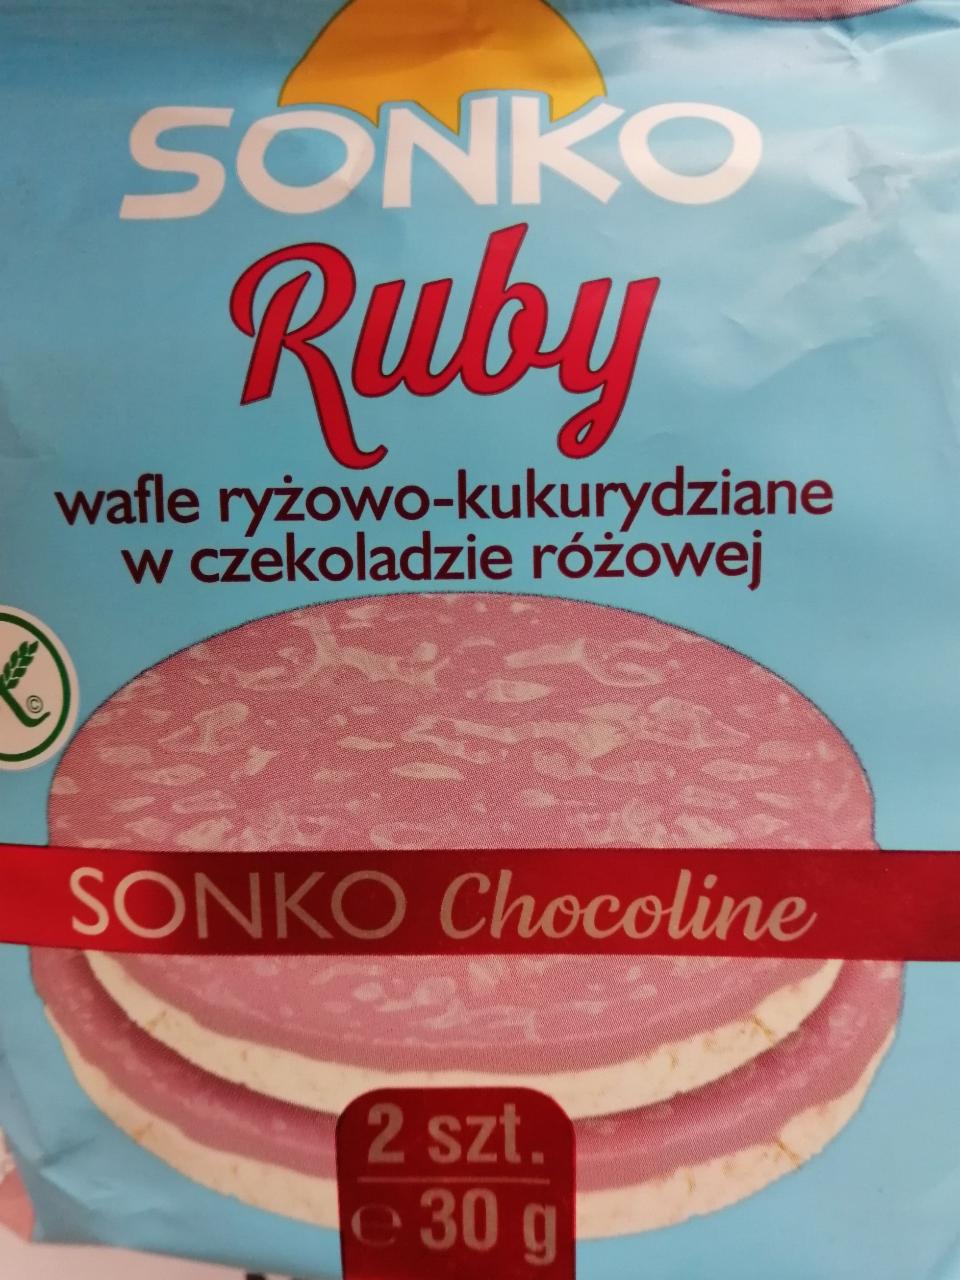 Zdjęcia - Sonko Wafle ryżowo-kukurydziane w czekoladzie różowej 30 g (2 sztuki)